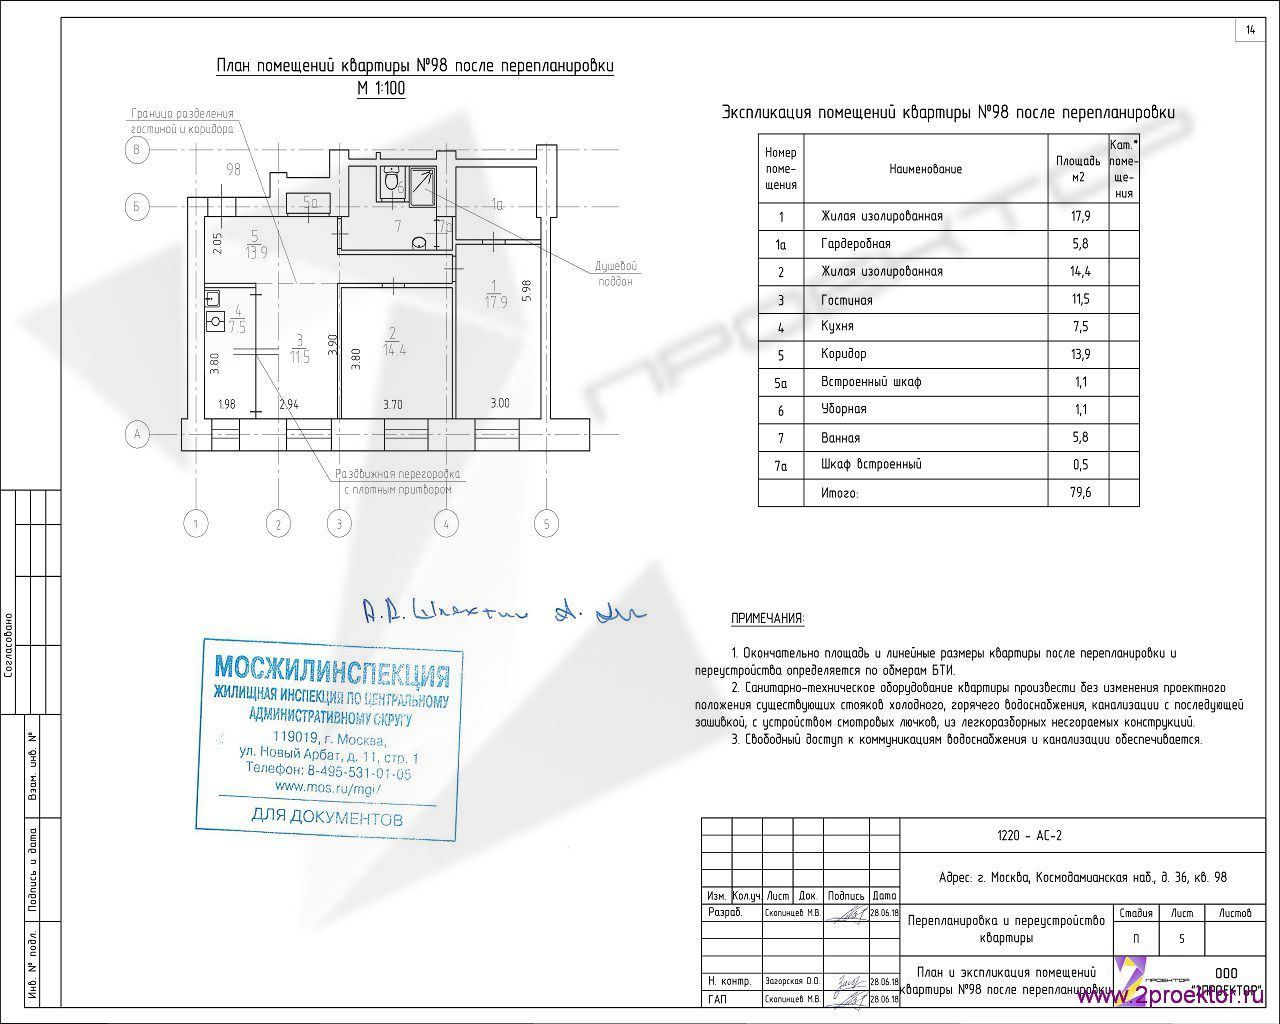 Вариант планировки квартиры разработанный ООО «2Проектор» и согласованный Мосжилинспекцией